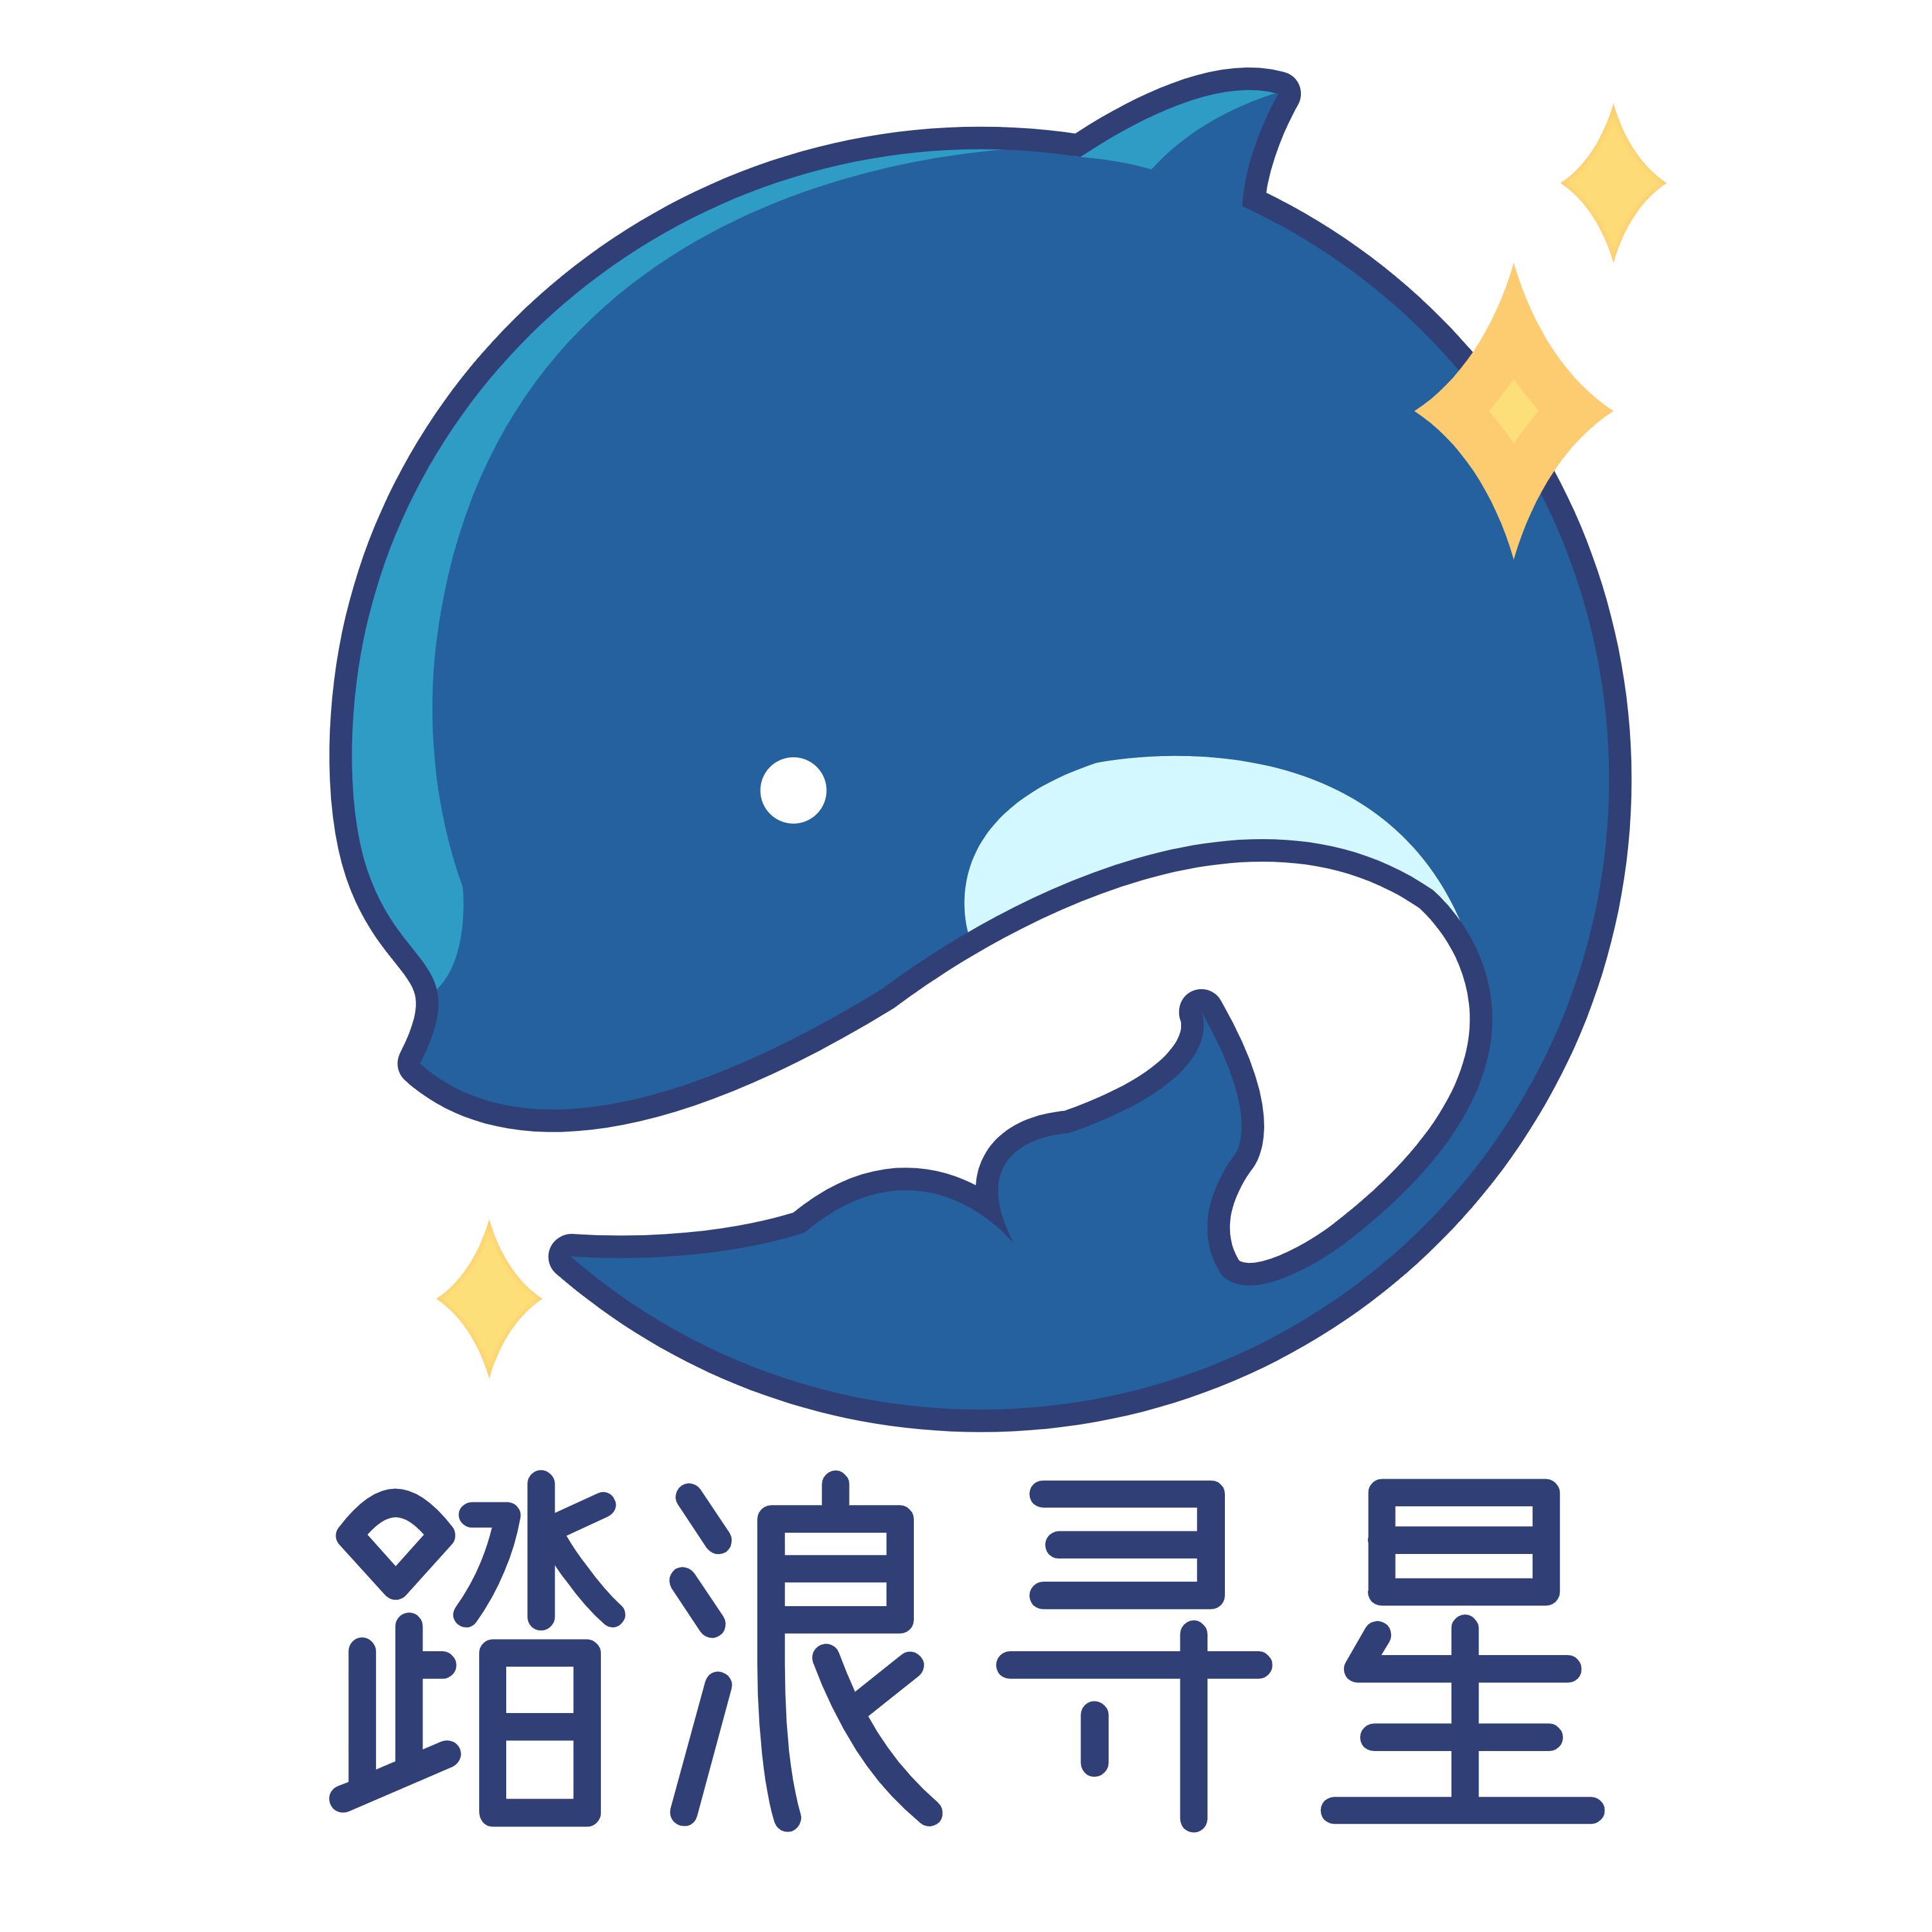 踏浪寻星广播电台 Logo